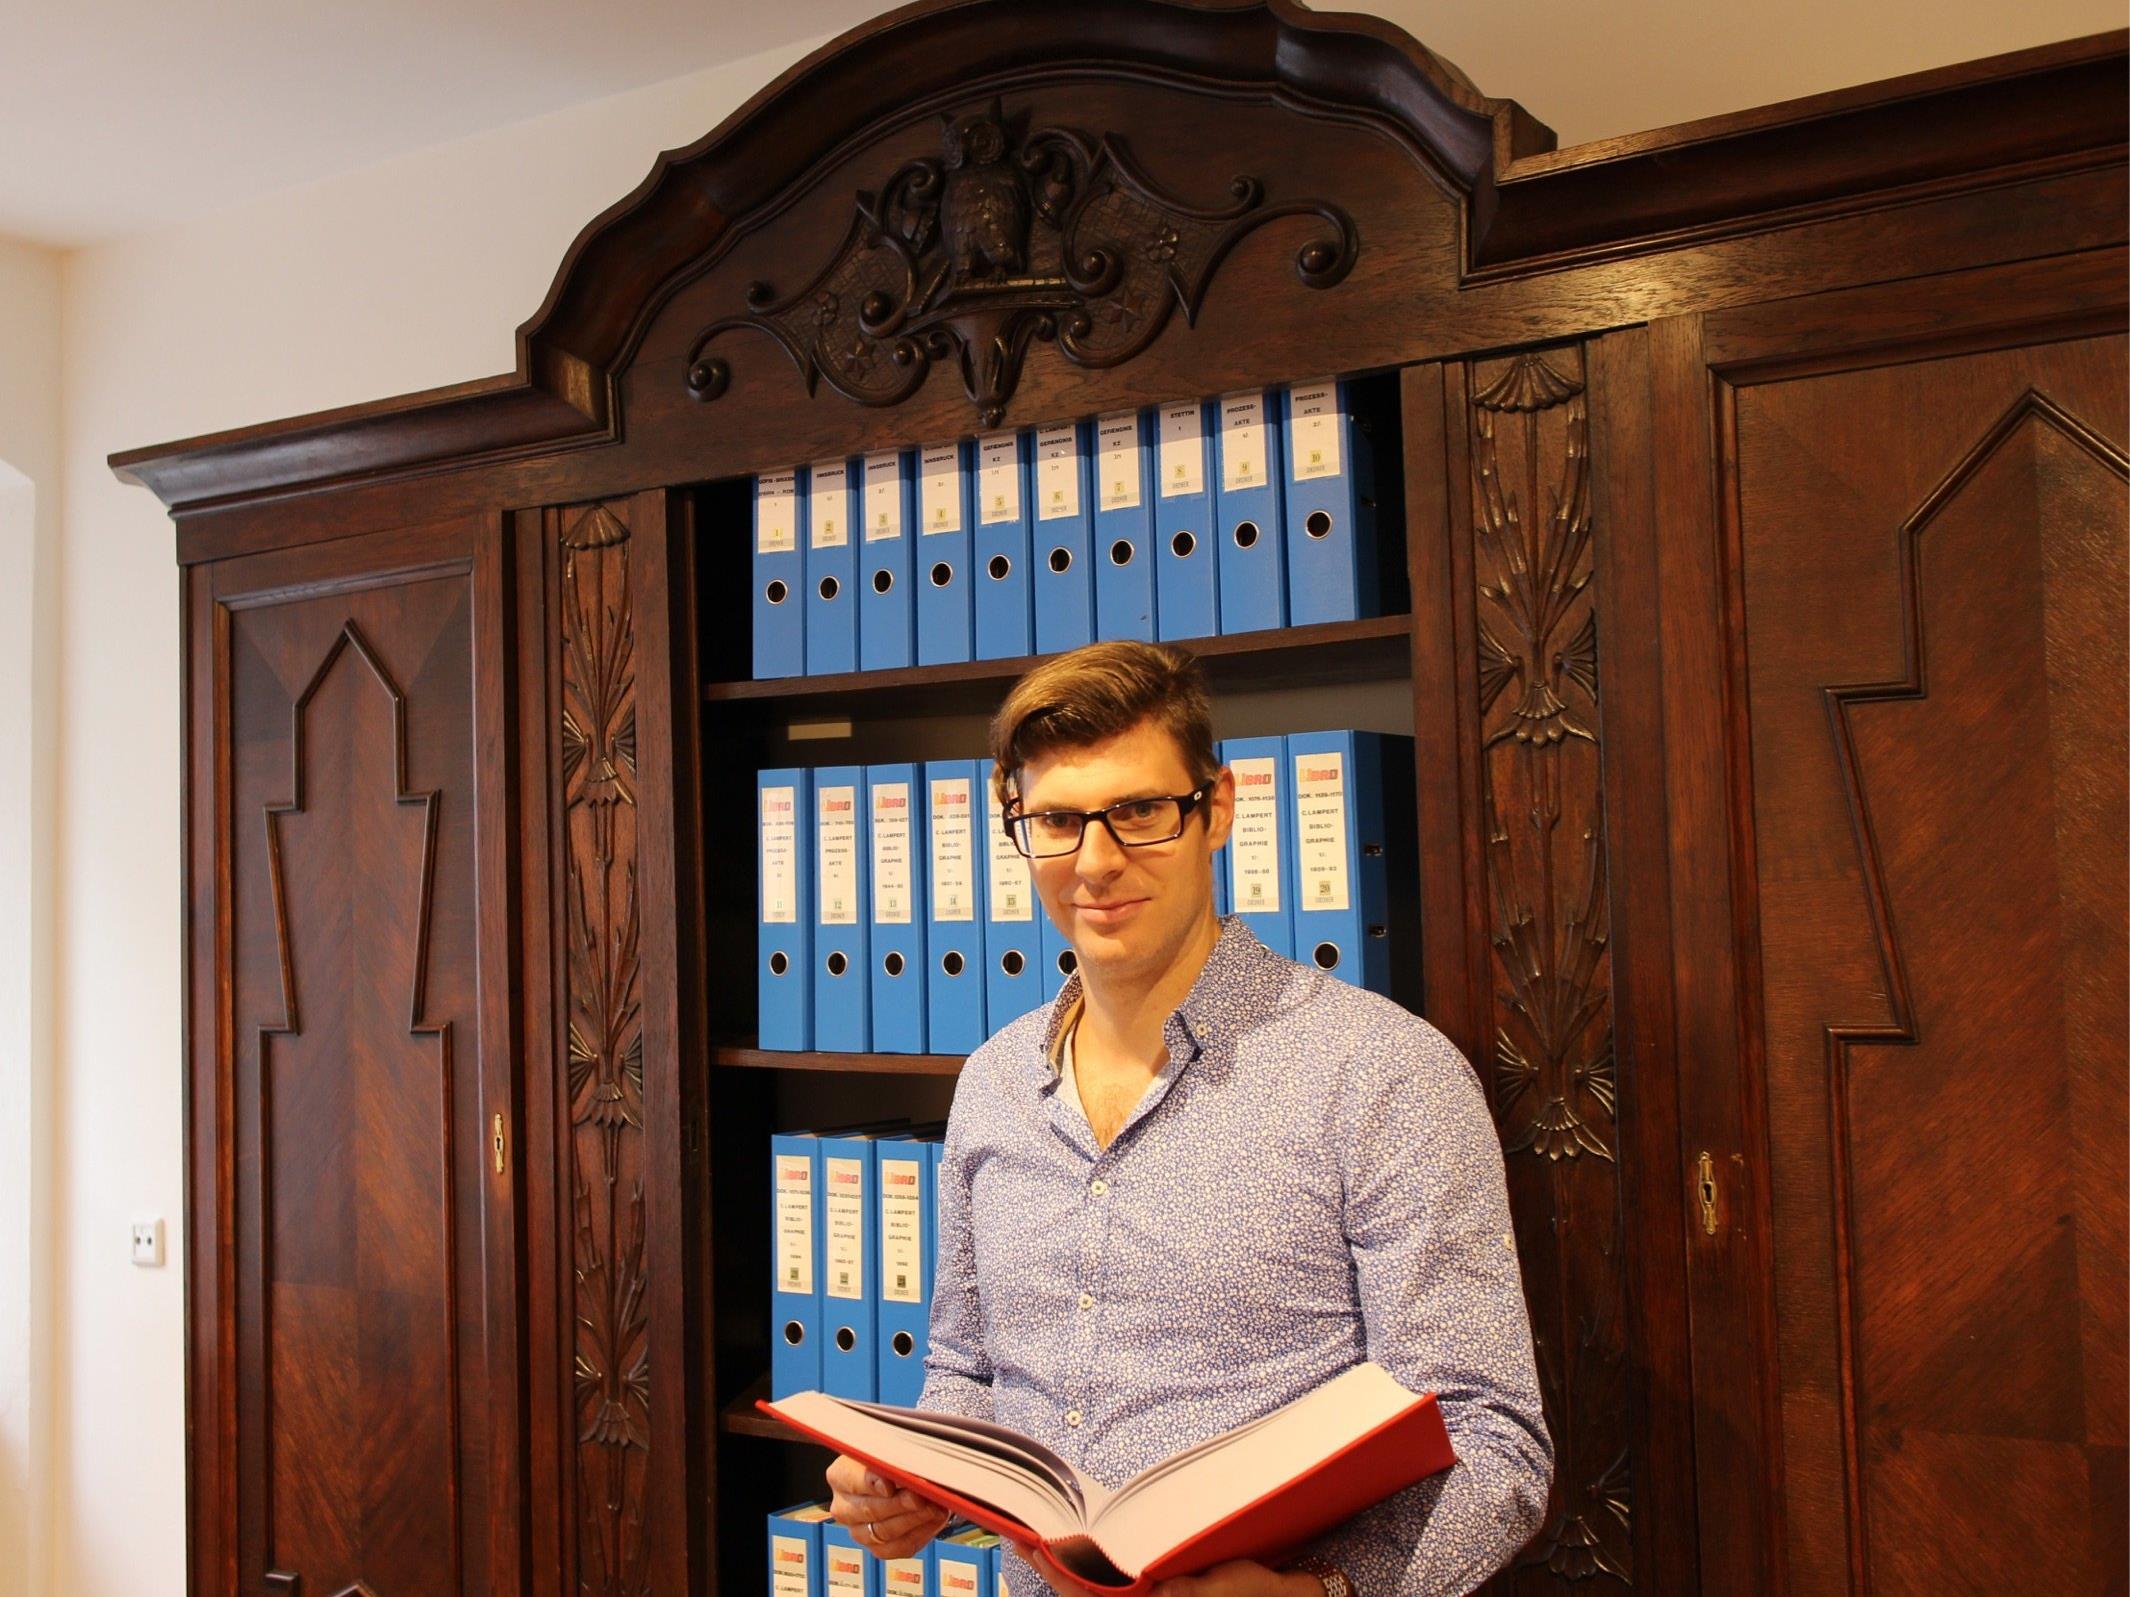 Diözesanarchivar Michael Fliri freut sich, dass nun in der Herrengasse 6 ein eigenes Carl Lampert Archiv Platz finden kann.